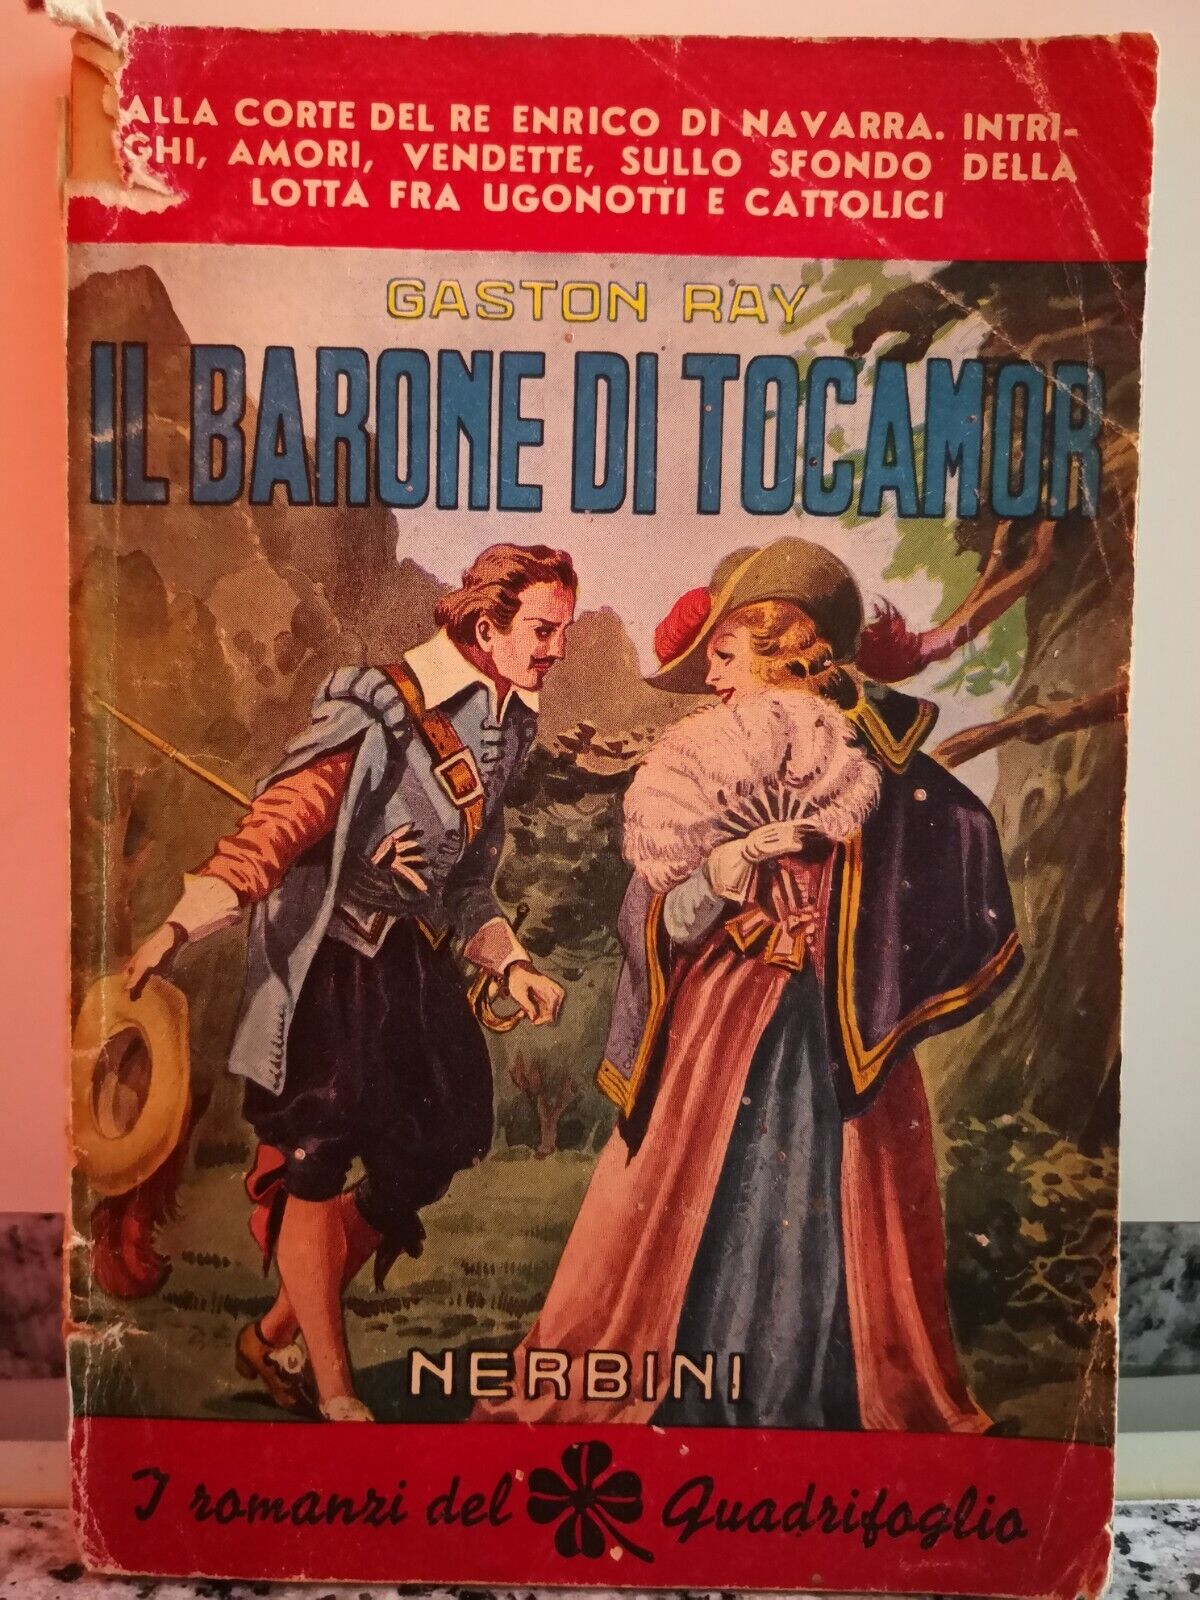  Il Barone di tocamor  di Gastone Ray,  1947,  Nerbini-F